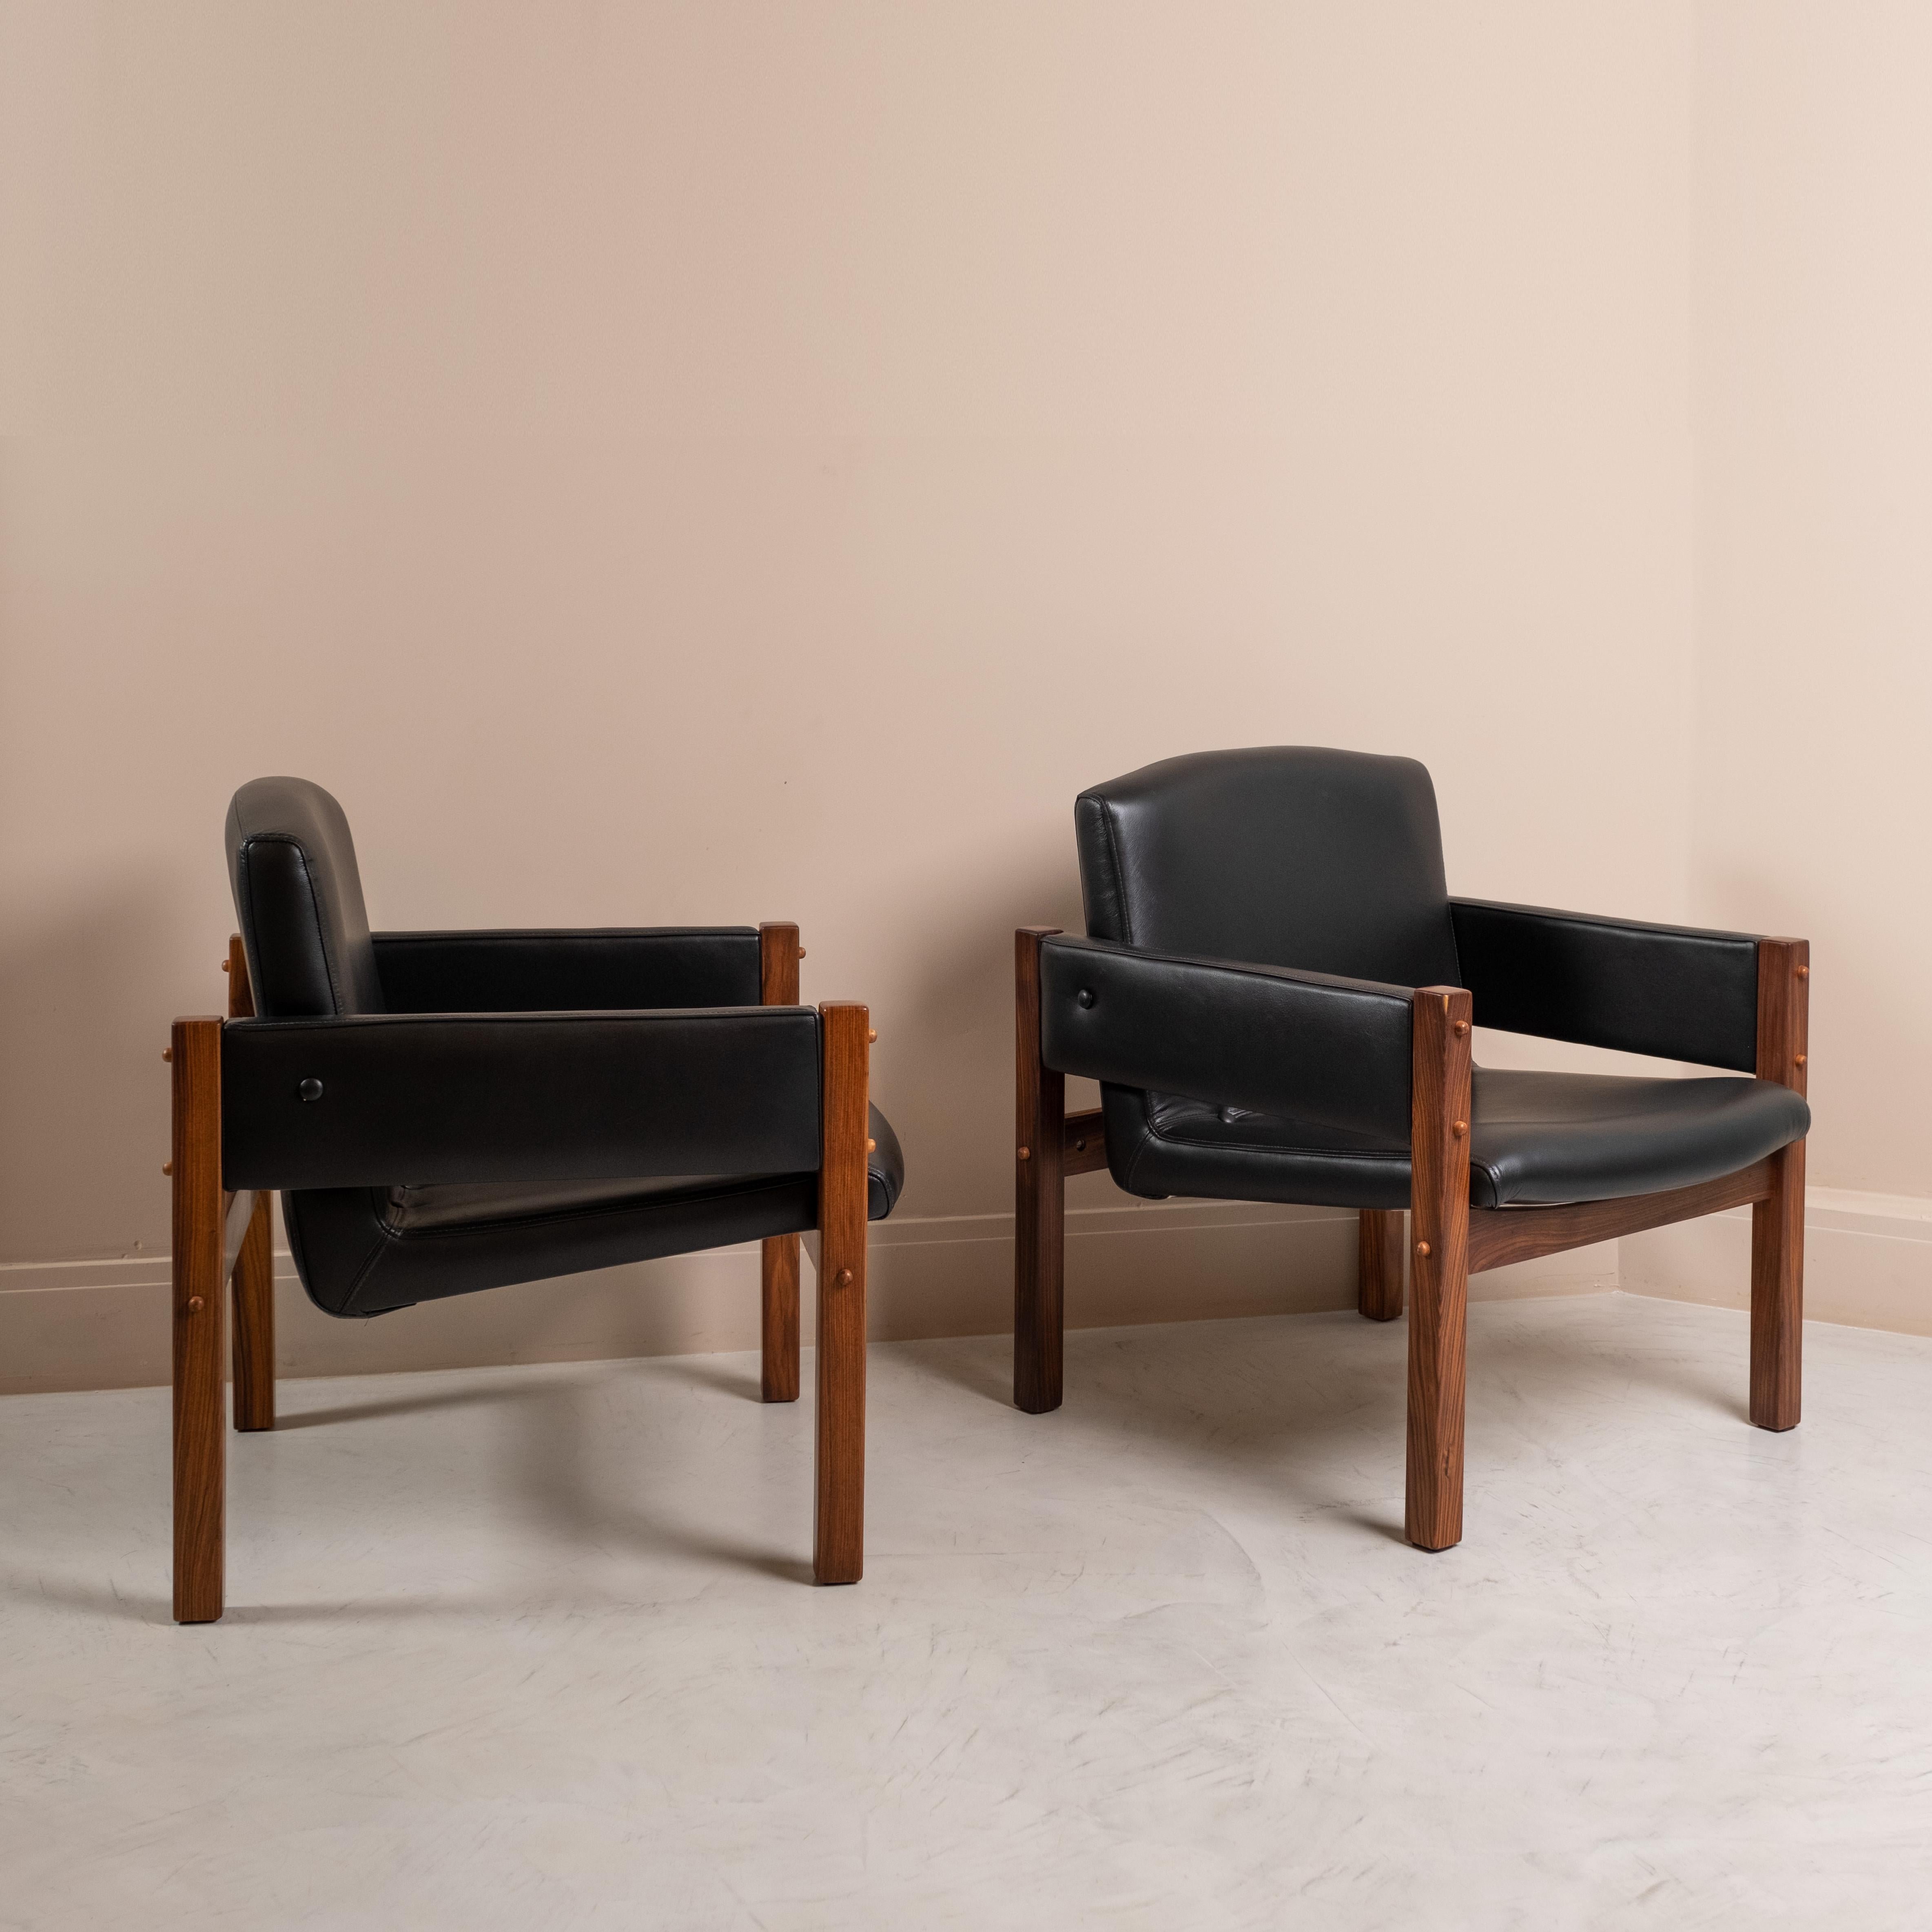 Paire étonnante d'Arco  fauteuils conçus par Sergio Rodrigues dans les années 1960 pour le palais d'Itamaraty.
Ils sont composés d'une structure en bois de rose massif. L'assise et le dossier sont constitués d'une seule pièce.
Pièces entièrement